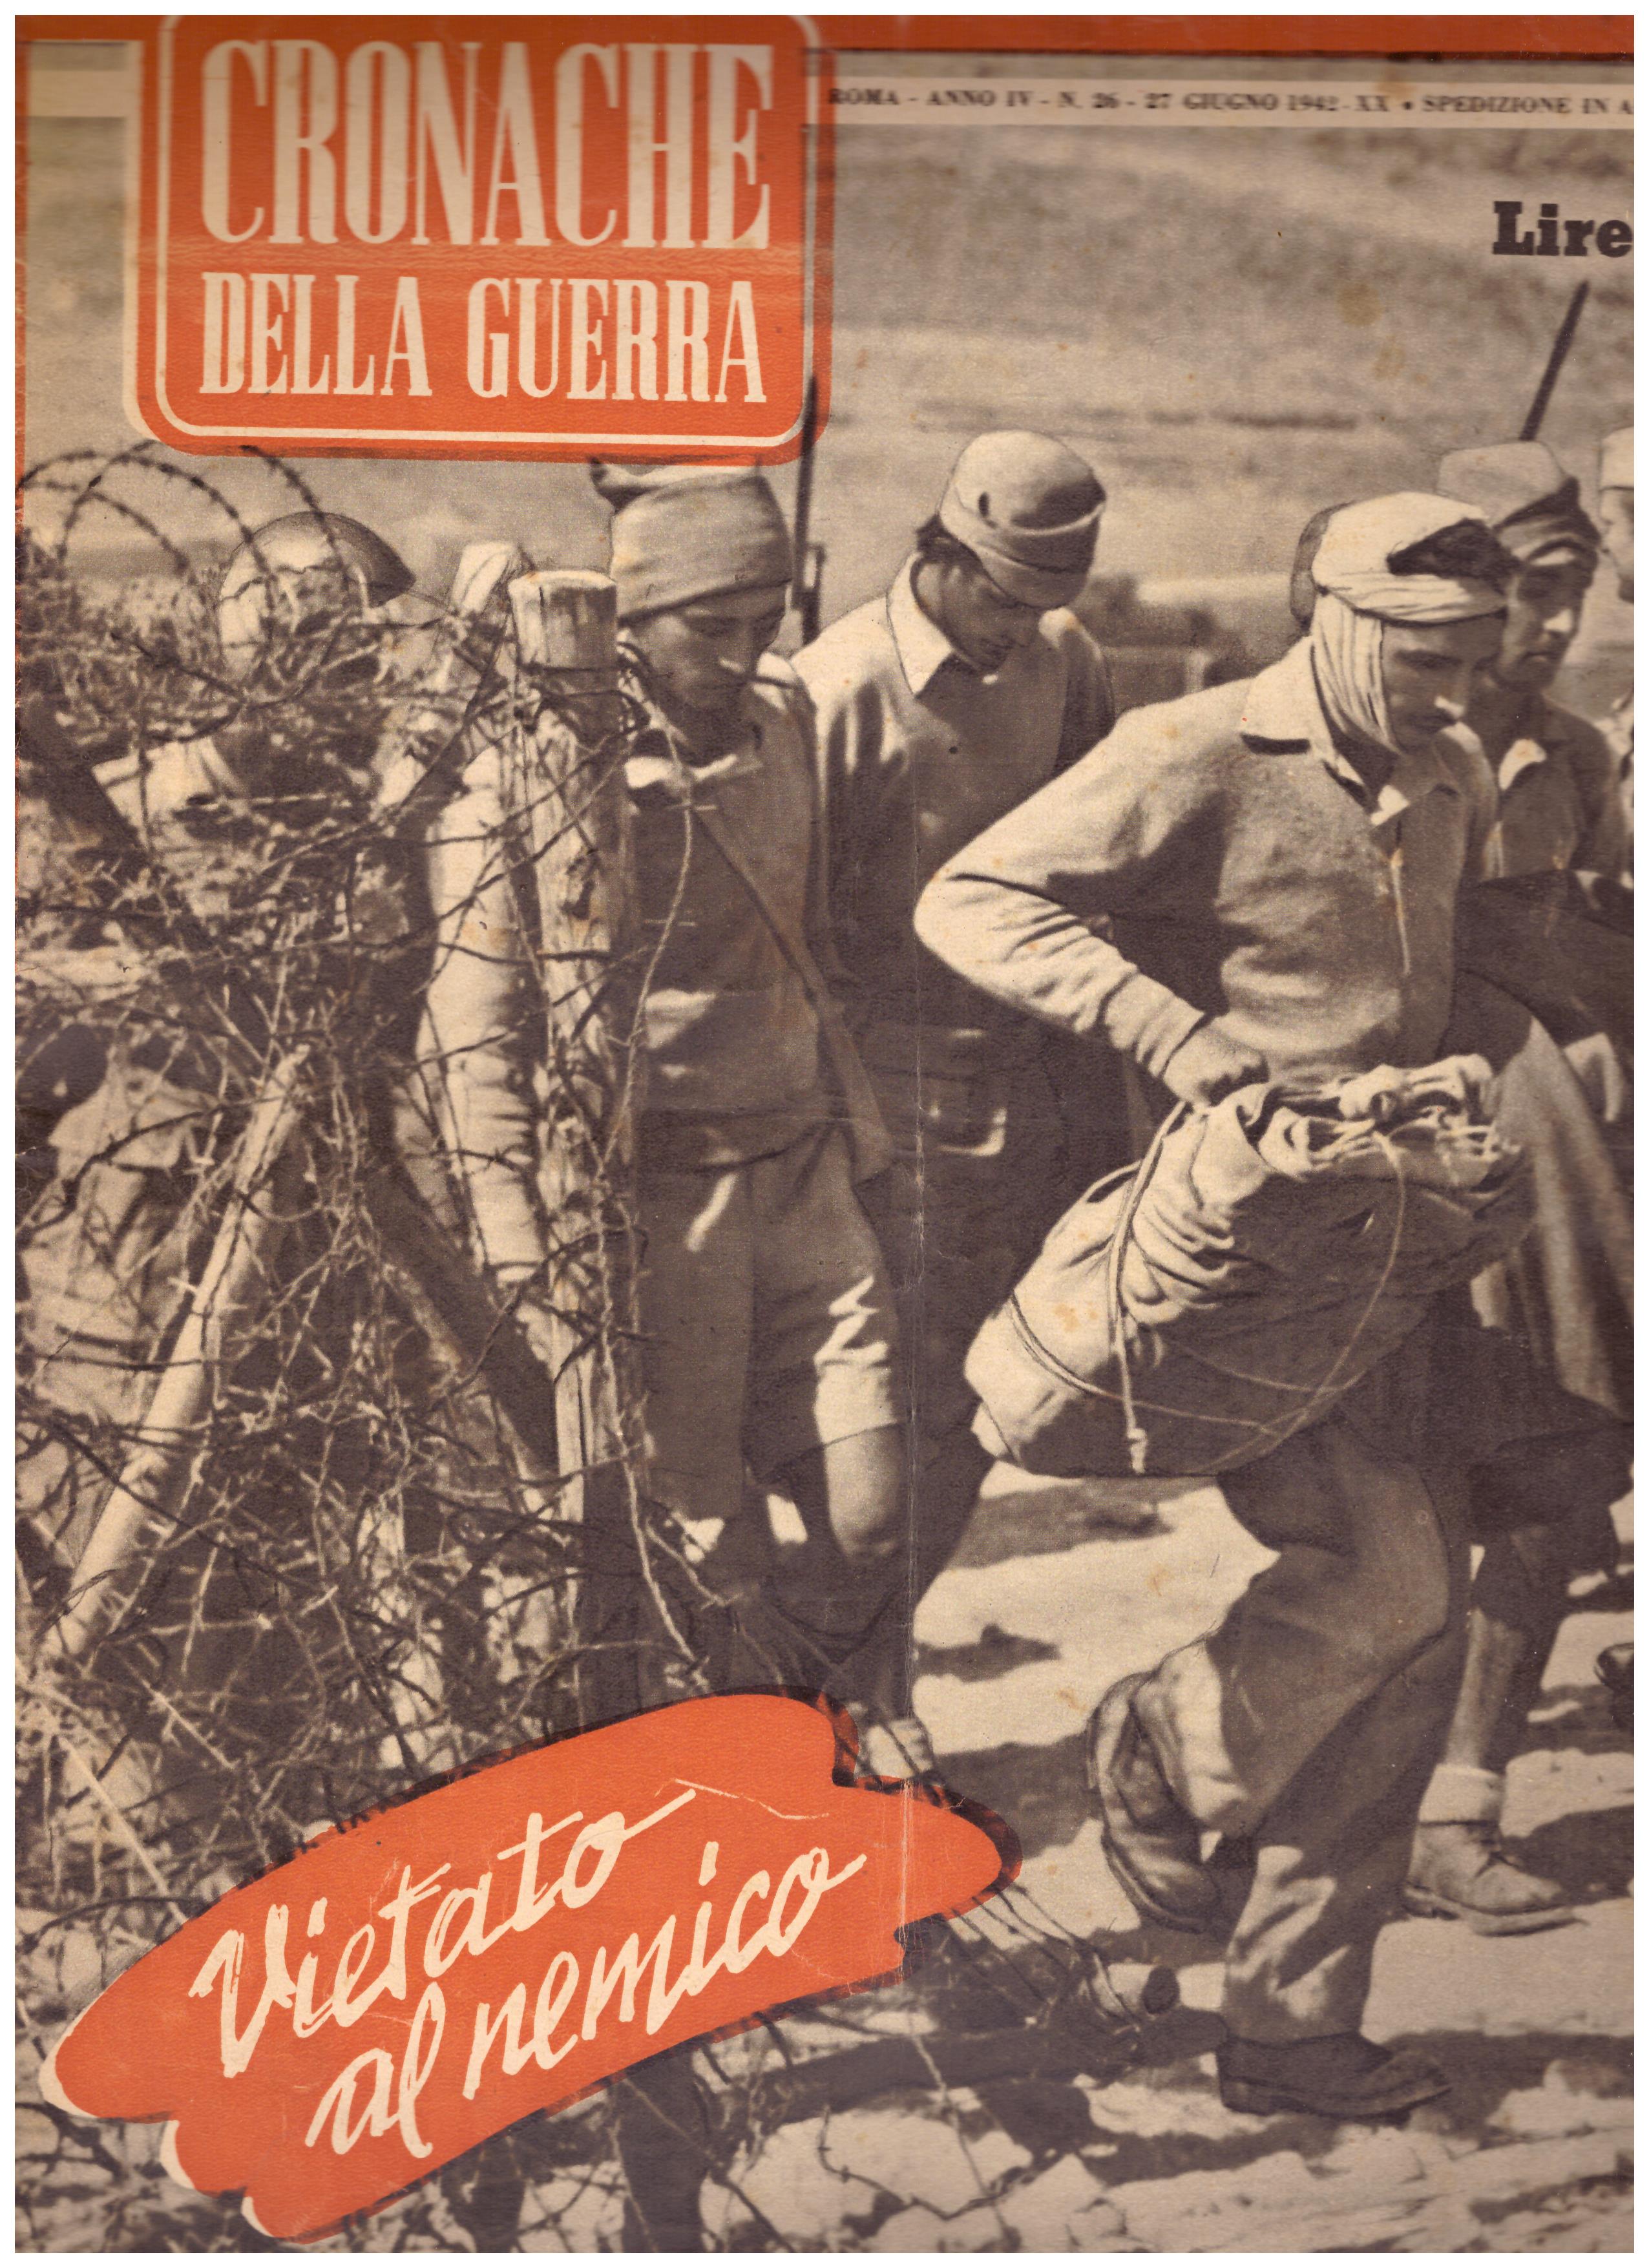 Titolo: Cronache della guerra, Roma Anno IV N.26-27  giugno 1942  Autore : AA.VV.   Editore: Tumminelli editore Roma